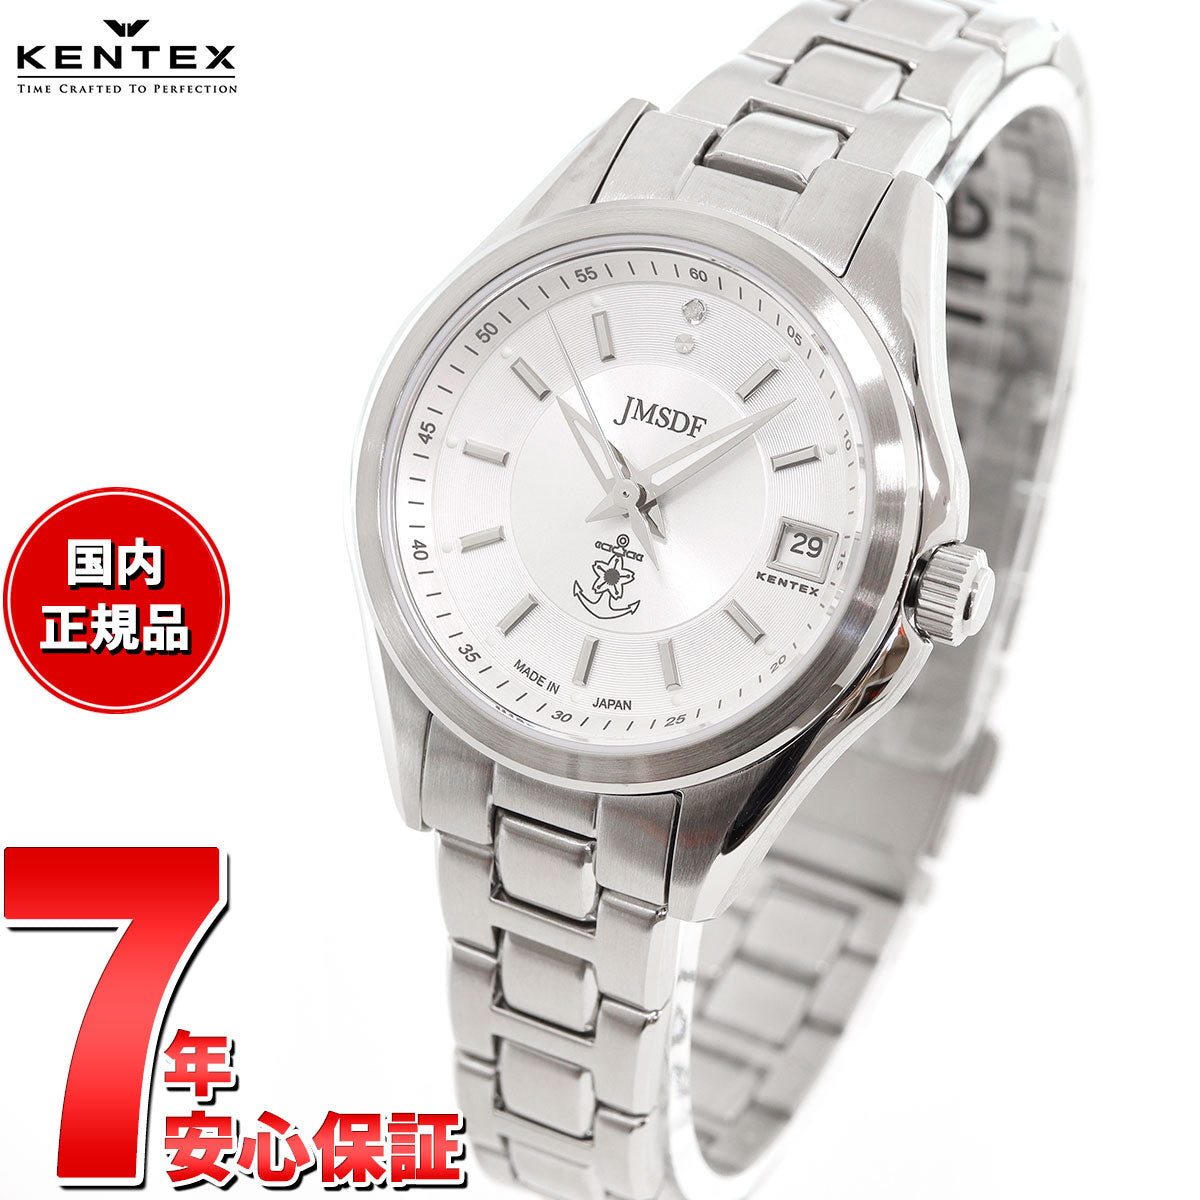 ケンテックス KENTEX JSDF 海上自衛隊モデル 腕時計 時計 レディース 日本製 S789L-3